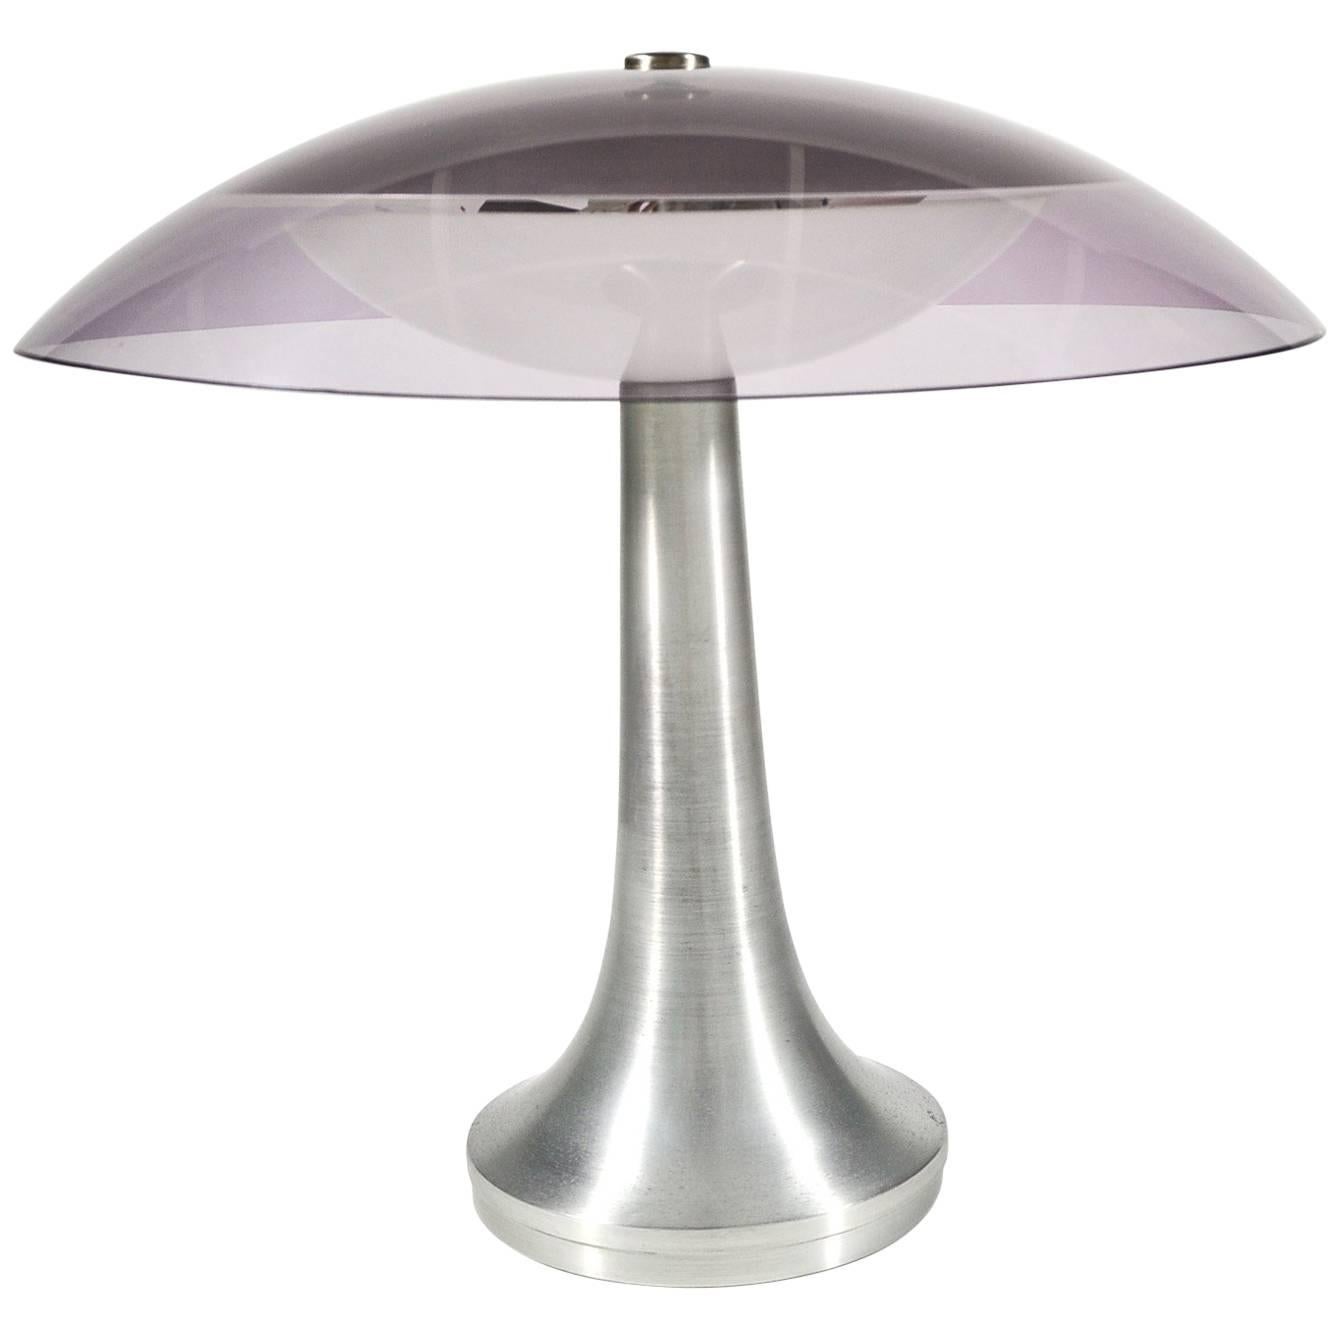 Stilux Milano Italian Table Lamp in Lucite and Aluminium, circa 1960 For Sale